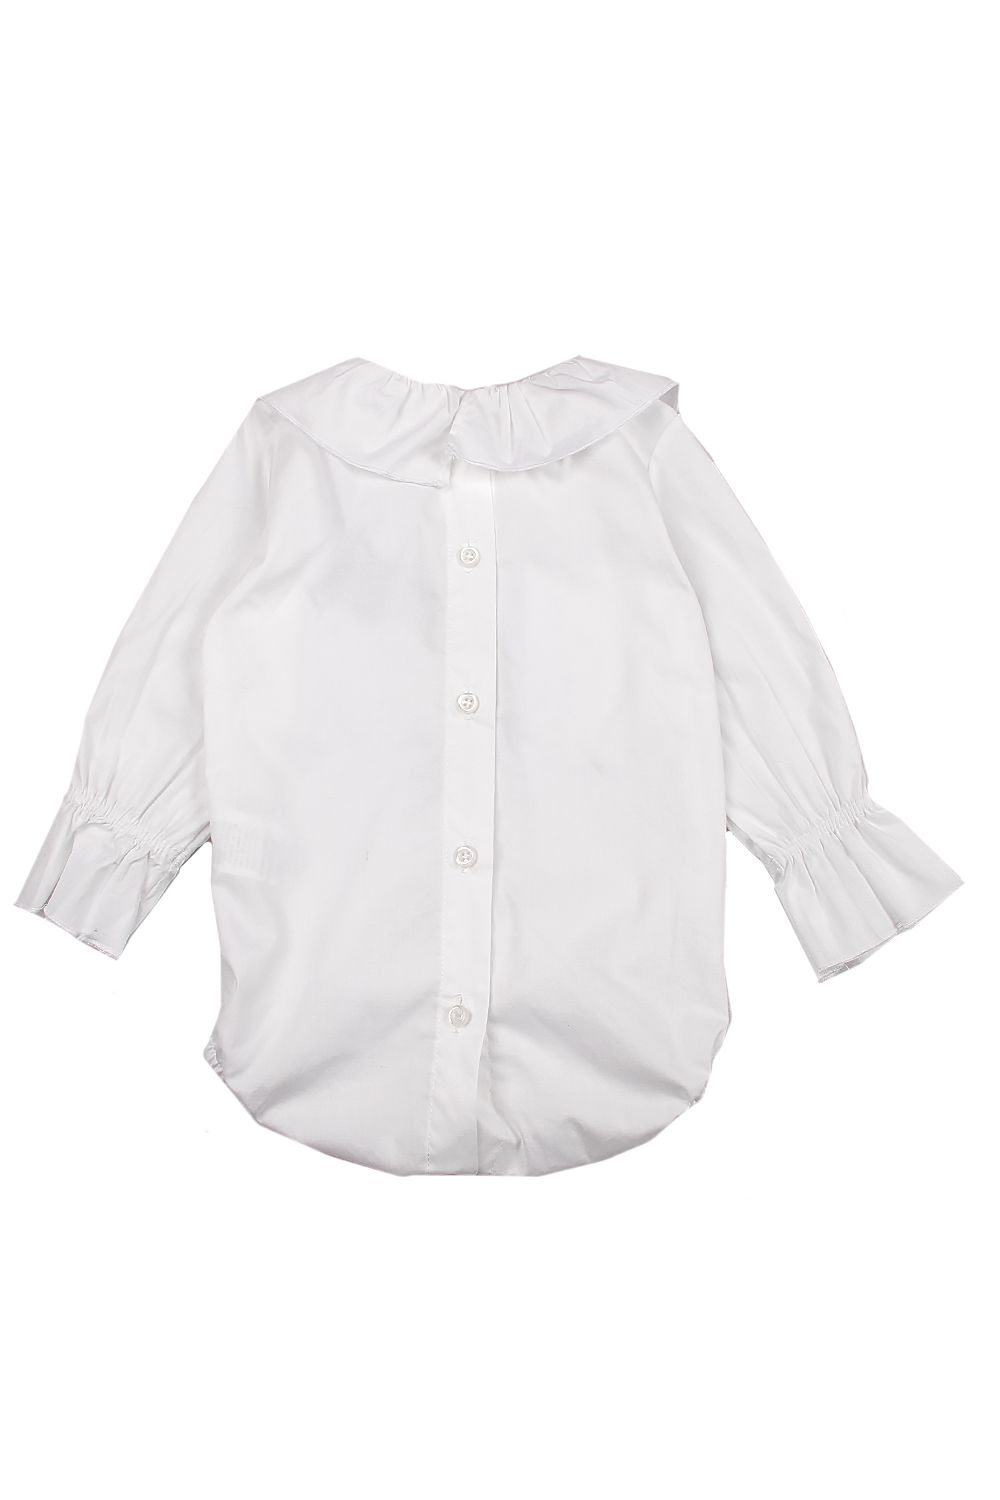 Блуза-боди Y-clu', размер 80, цвет белый YN14800 - фото 2